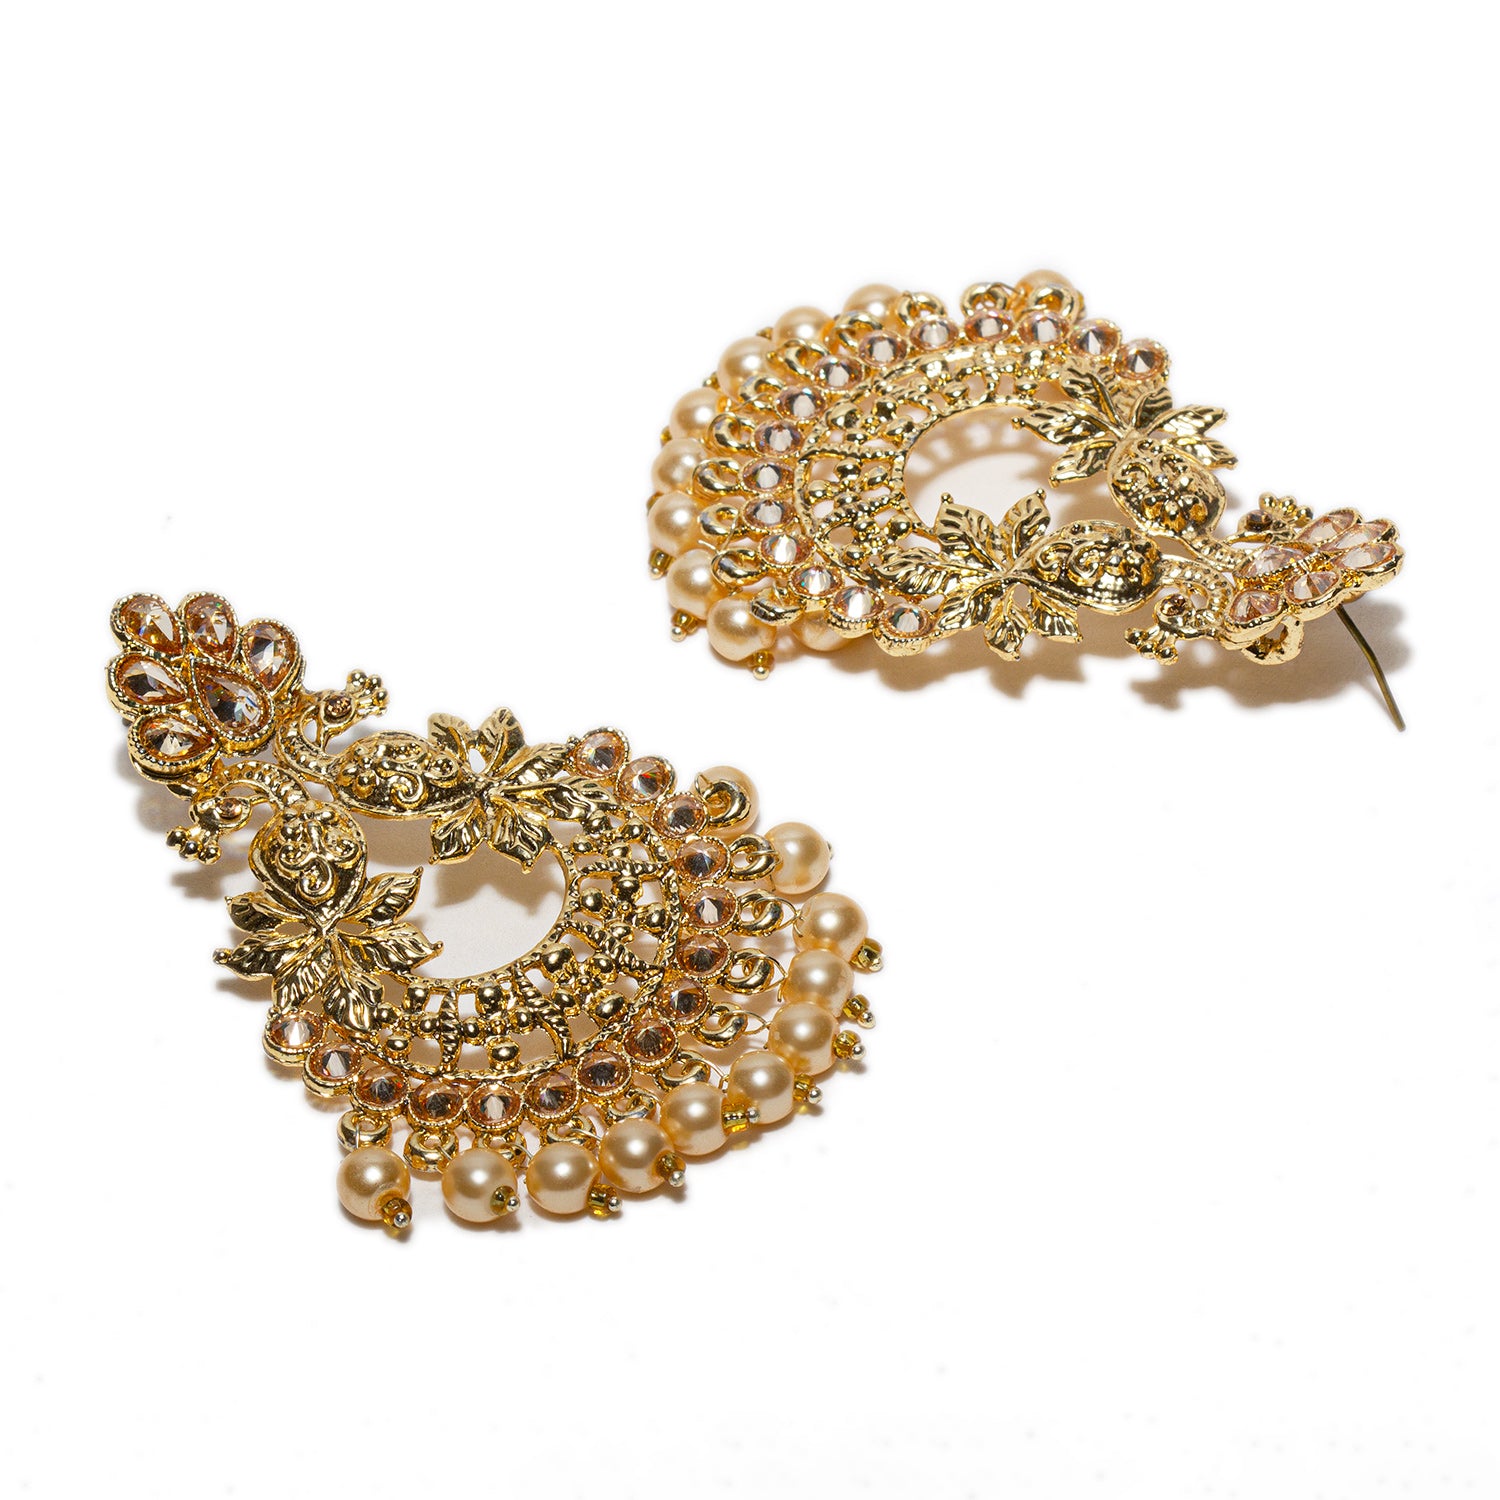 Chandelier Earrings, Rhinestone Earrings, Large Earrings, Fish Hook Earrings, Gold Earrings, Womens Earrings, Earring for woman